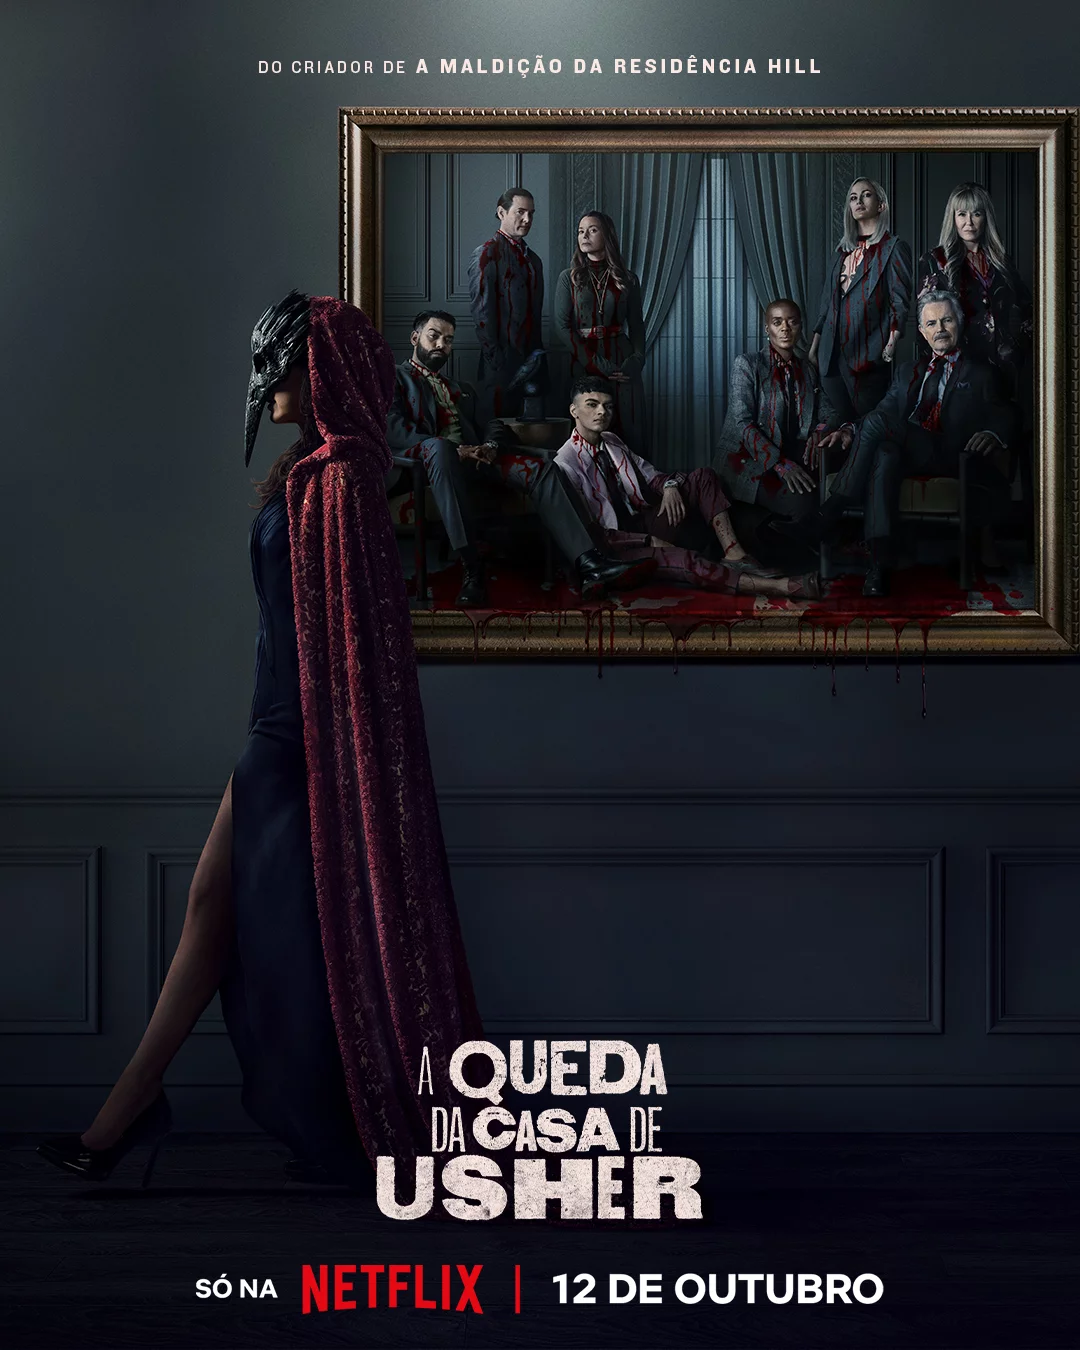 A Queda da Casa Usher: Trailer mostra versão moderna do terror de